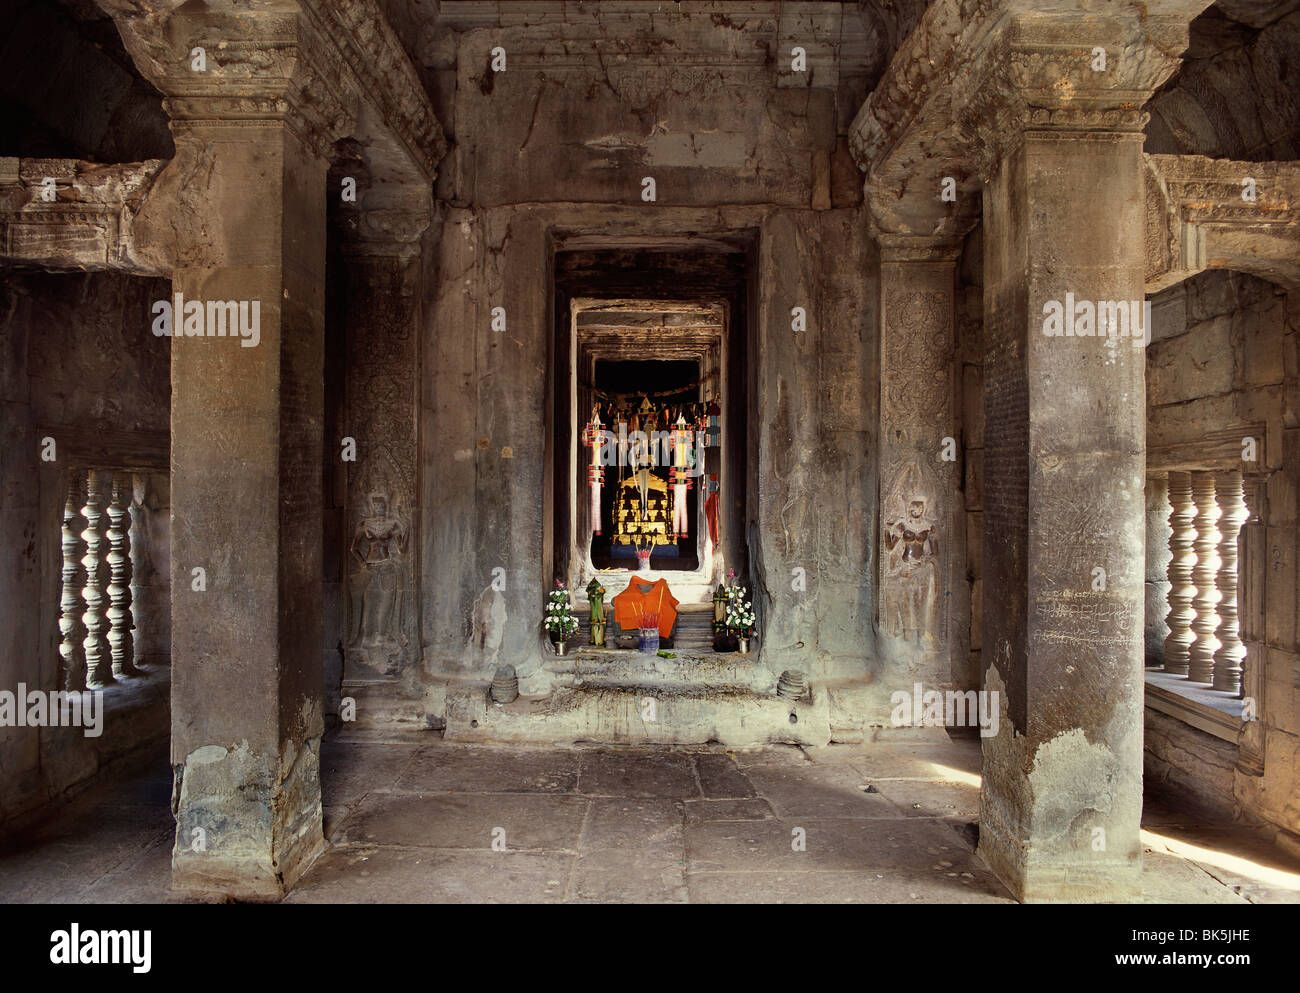 Wat Akk Twea, Angkor, Site du patrimoine mondial de l'UNESCO, le Cambodge, l'Indochine, l'Asie du Sud-Est, Asie Banque D'Images